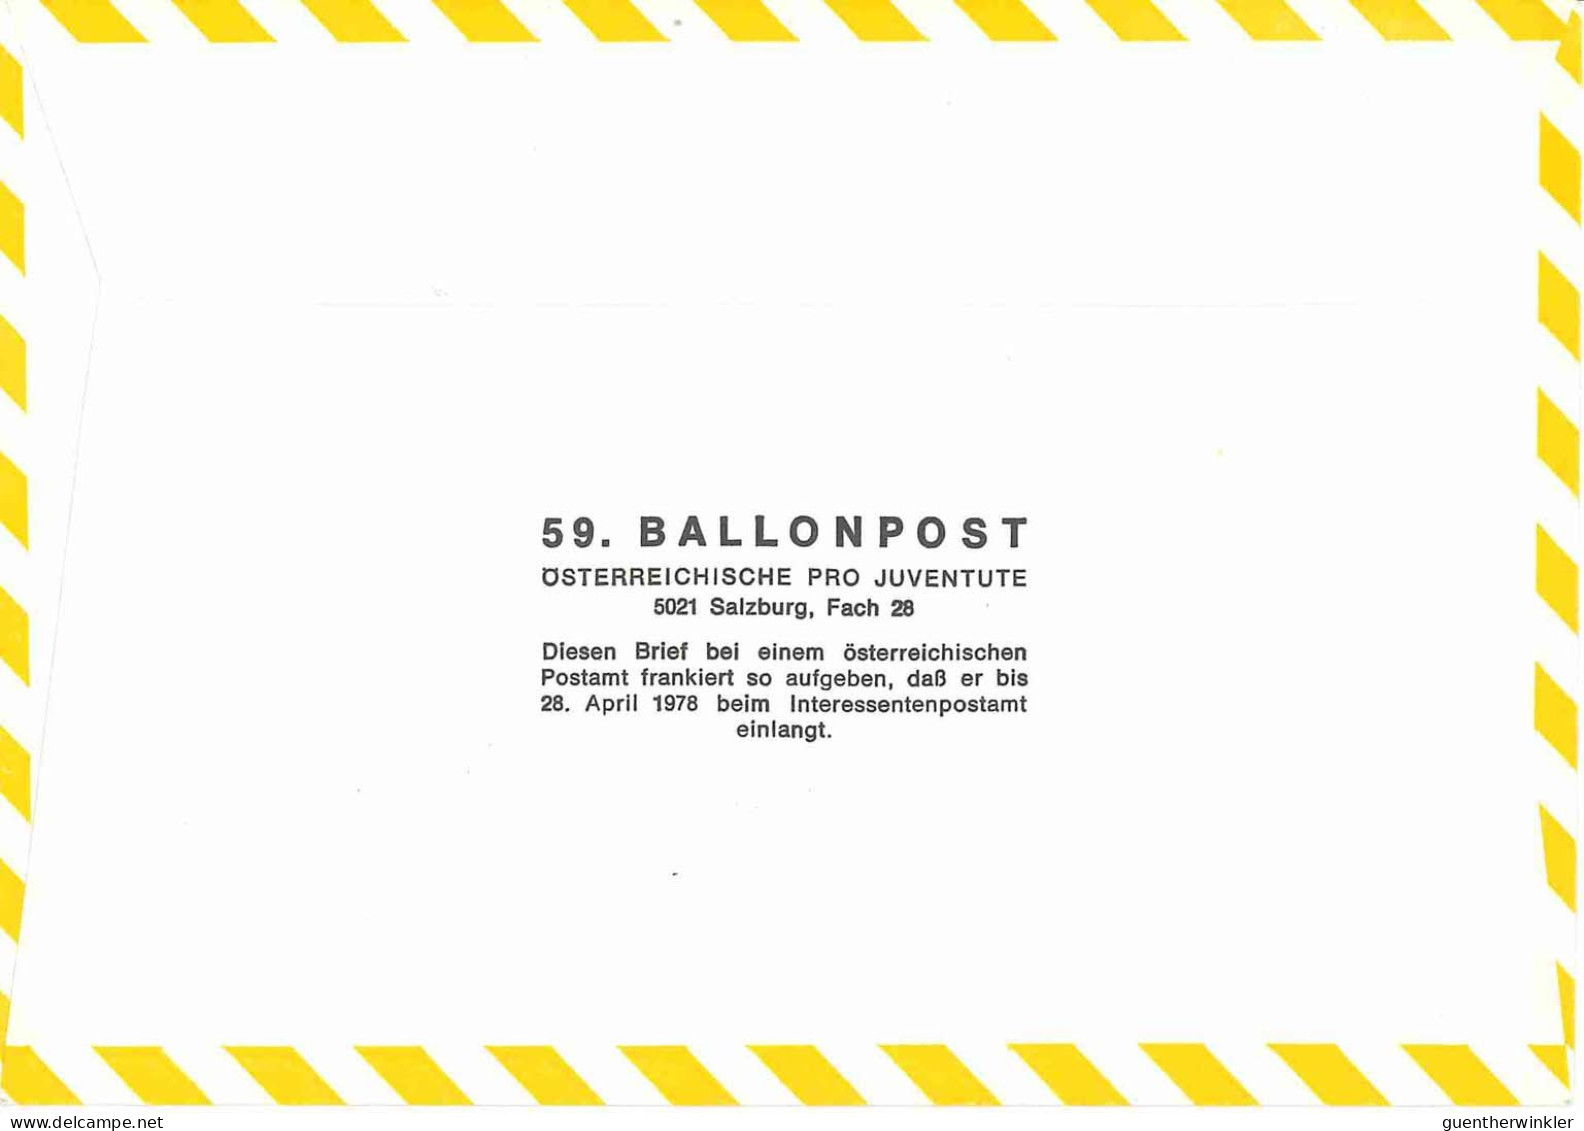 Regulärer Ballonpostflug Nr. 59a Der Pro Juventute [RBP59a] - Par Ballon